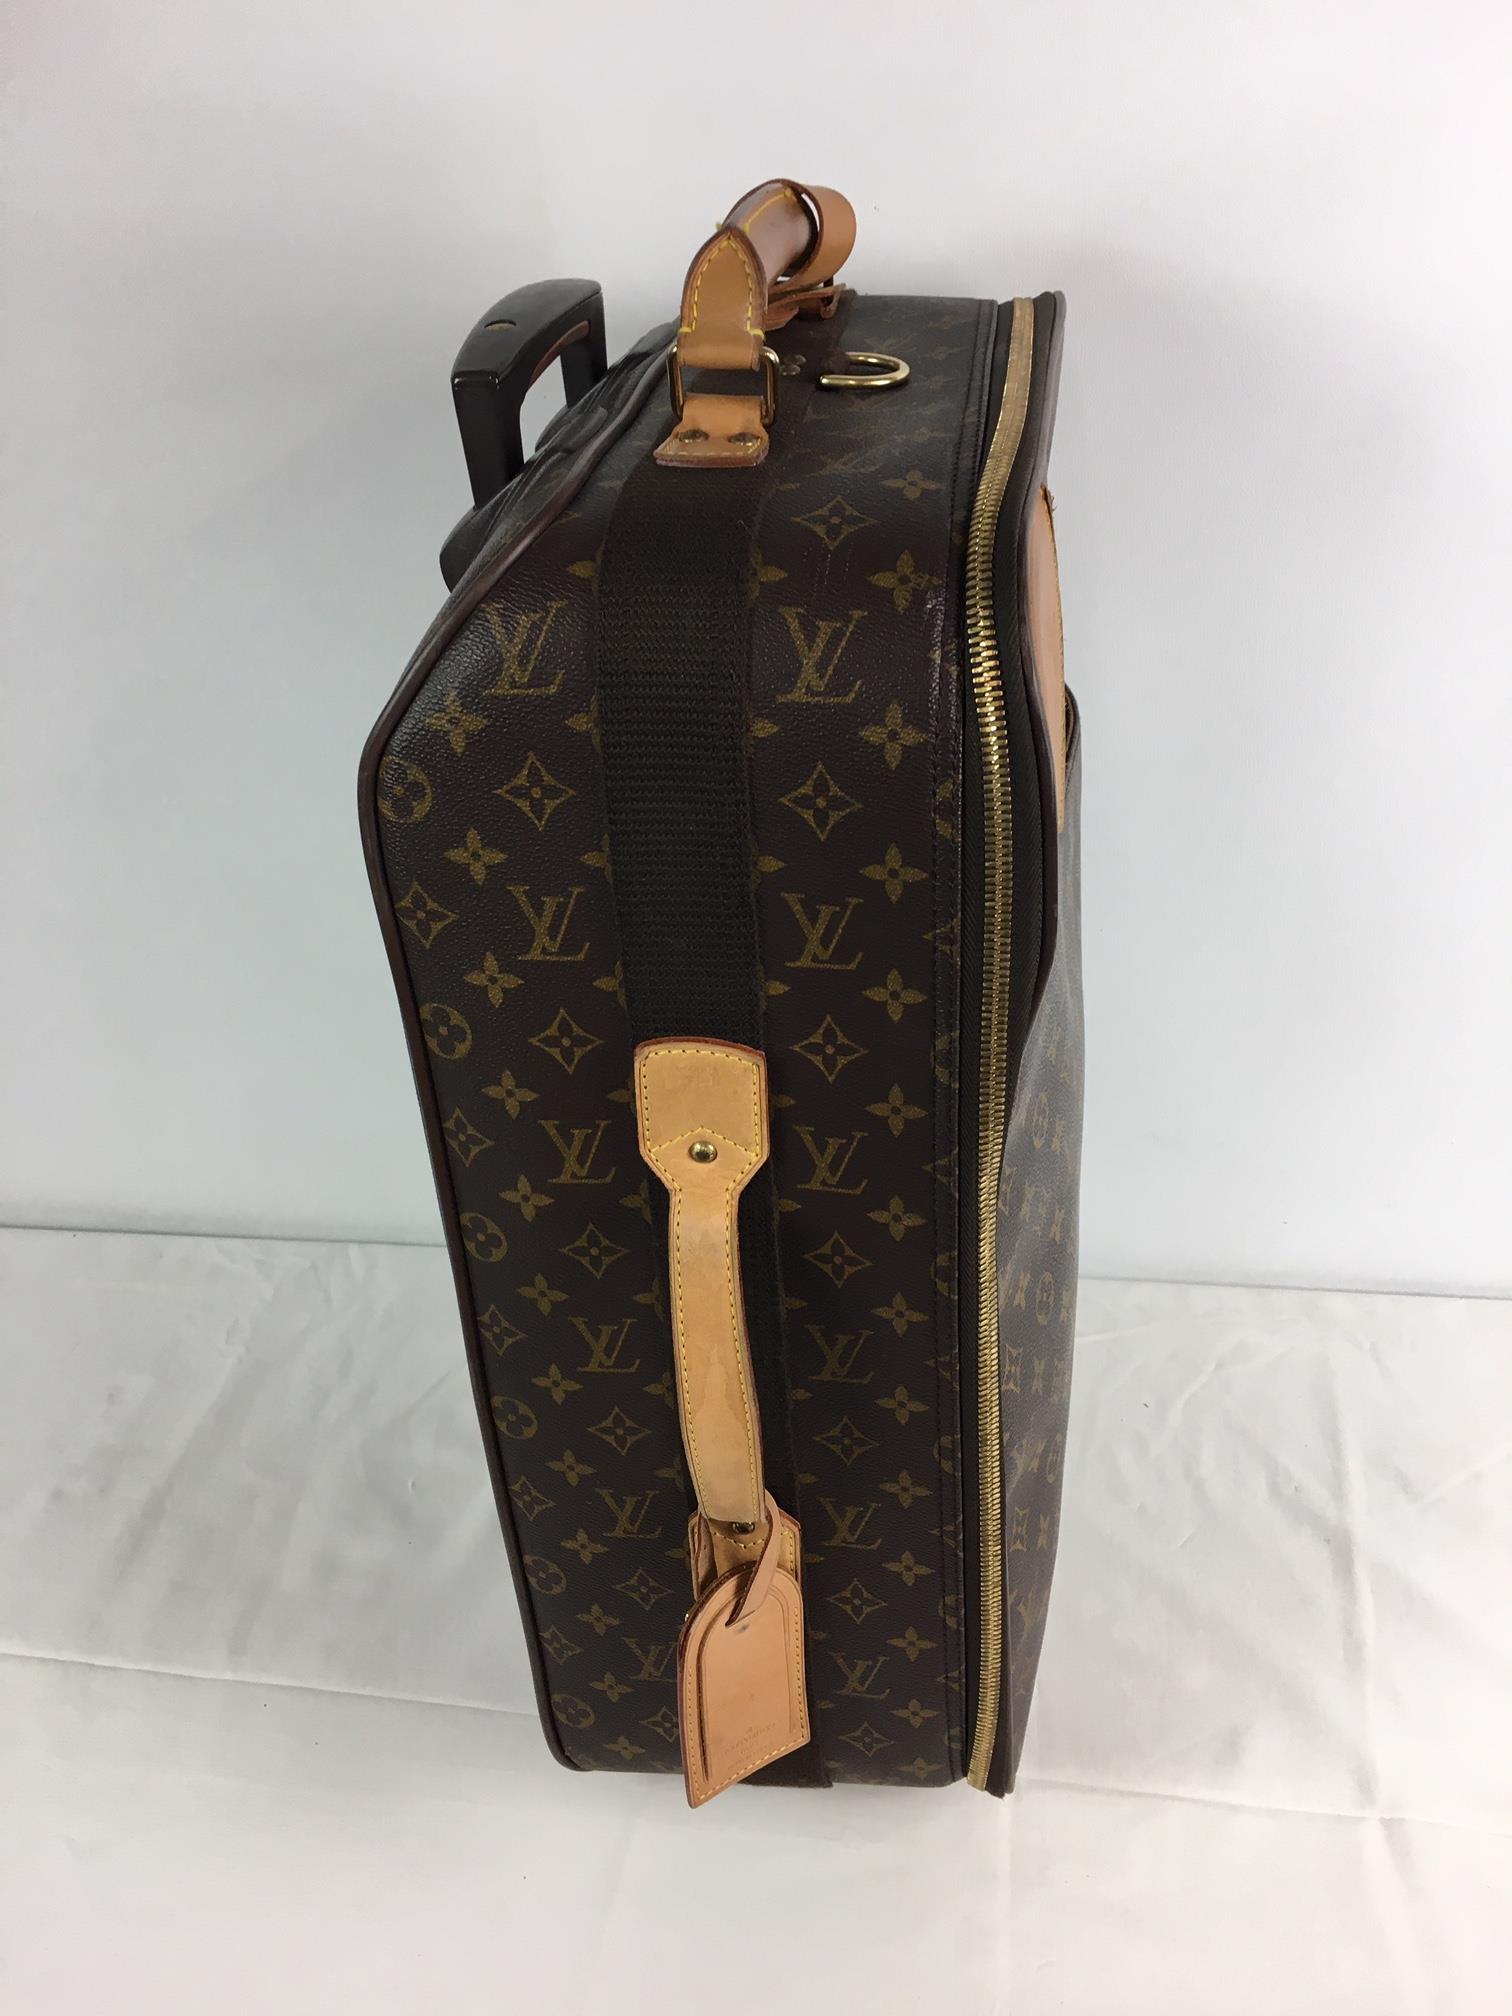 A Louis Vuitton Pegase monogram cabin / trolley bag case, LV catalogue no. M23250, with suit carr